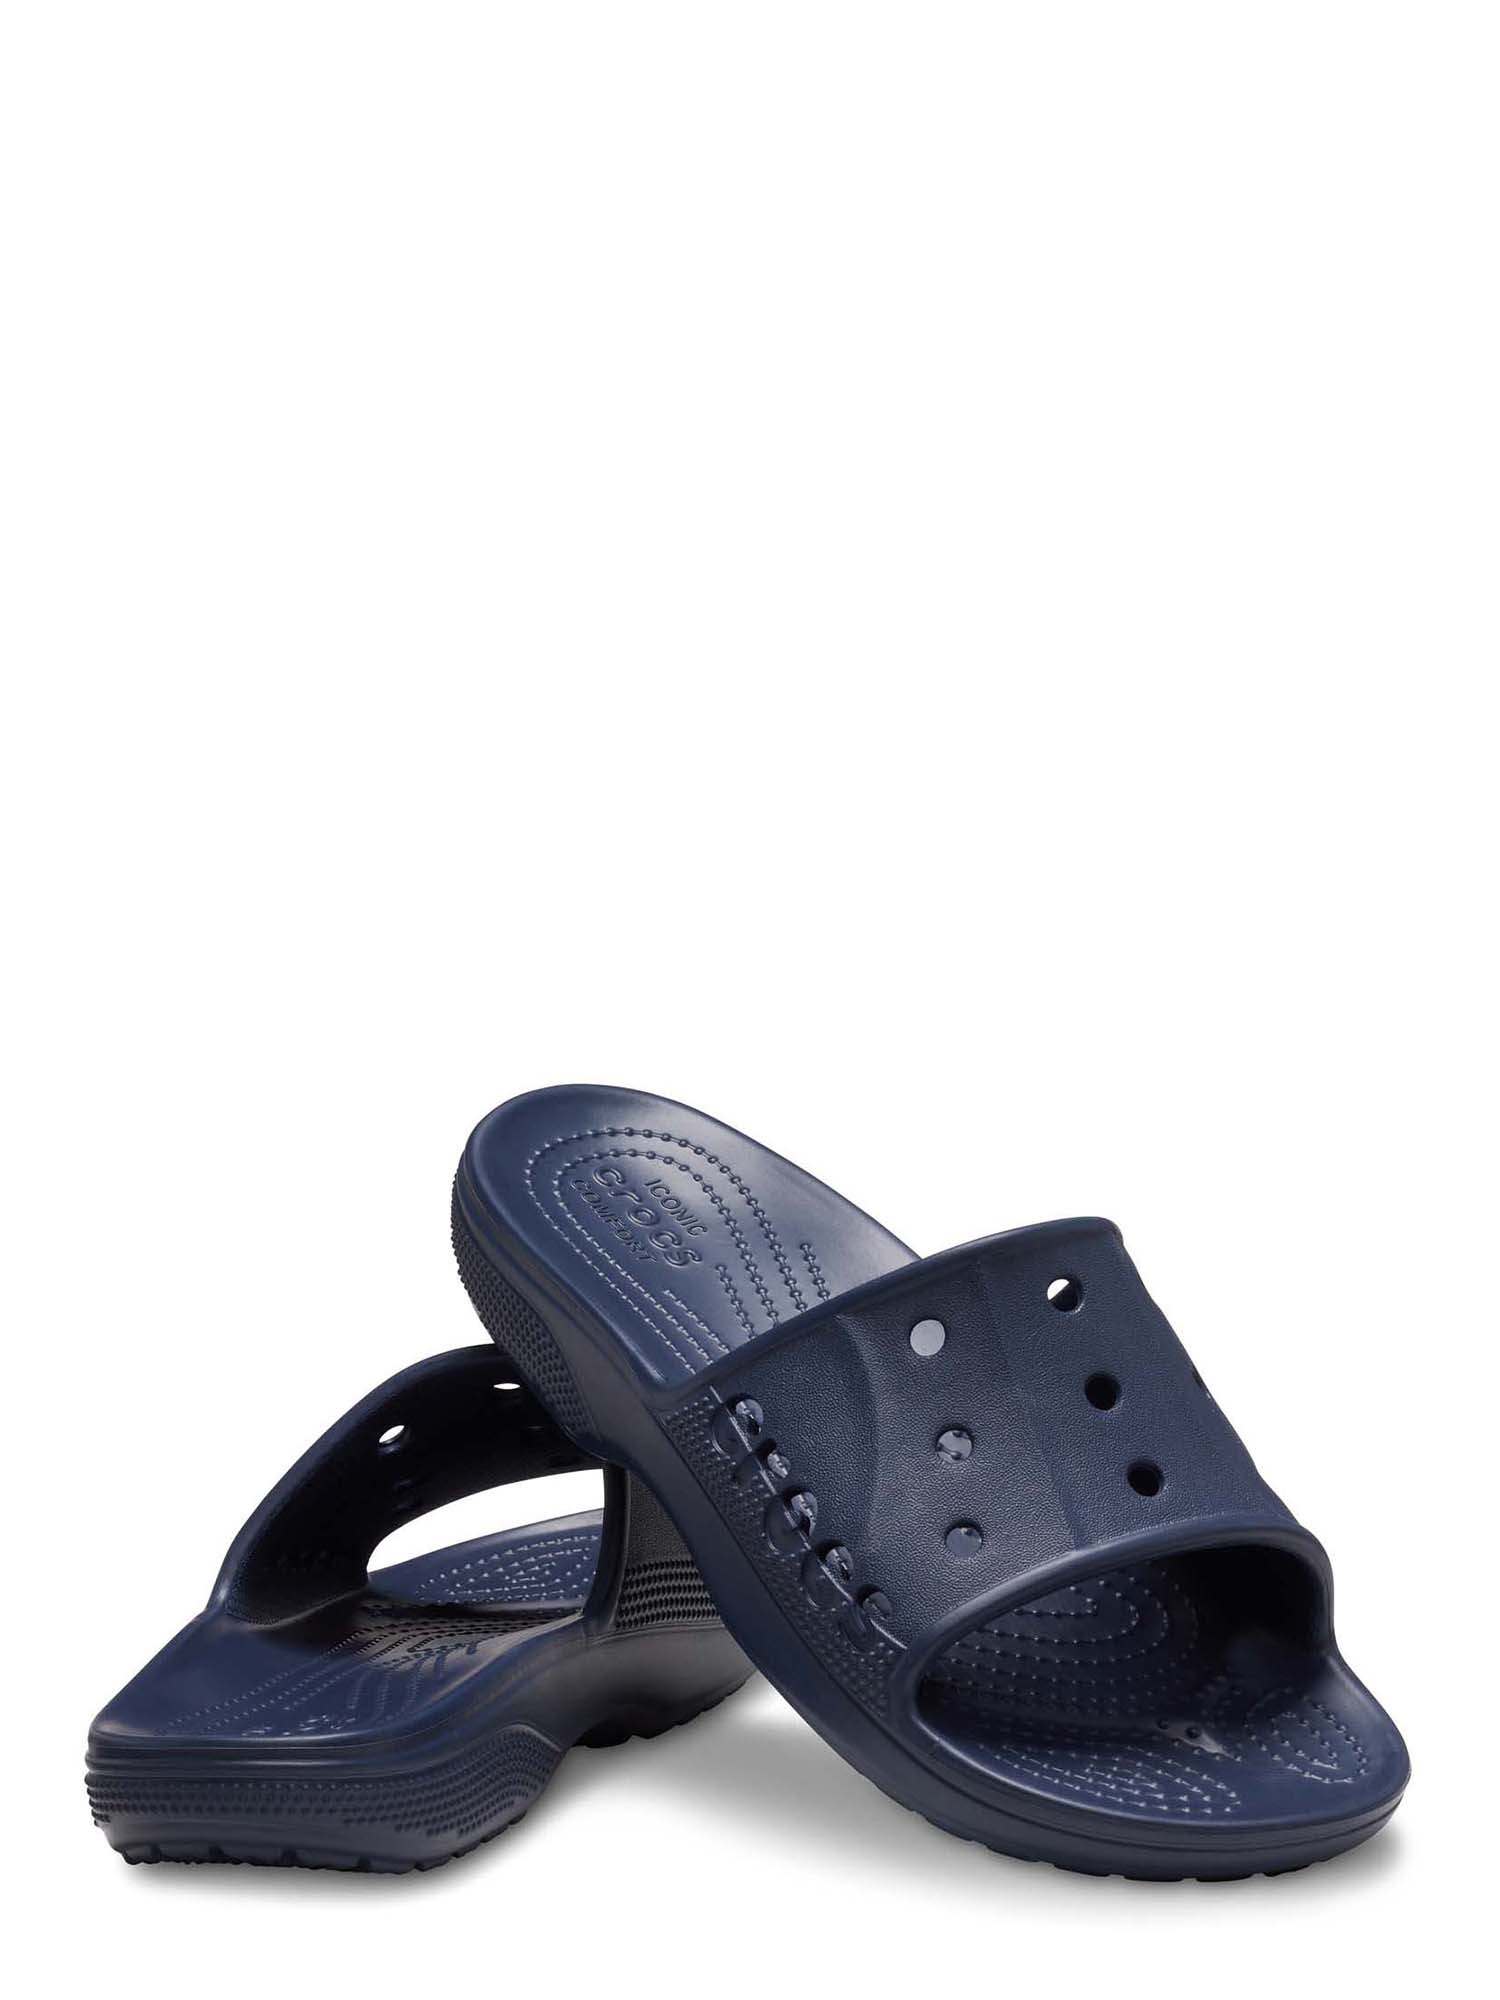 Crocs Men’s and Women’s Unisex Baya II Slide Sandals - image 4 of 5